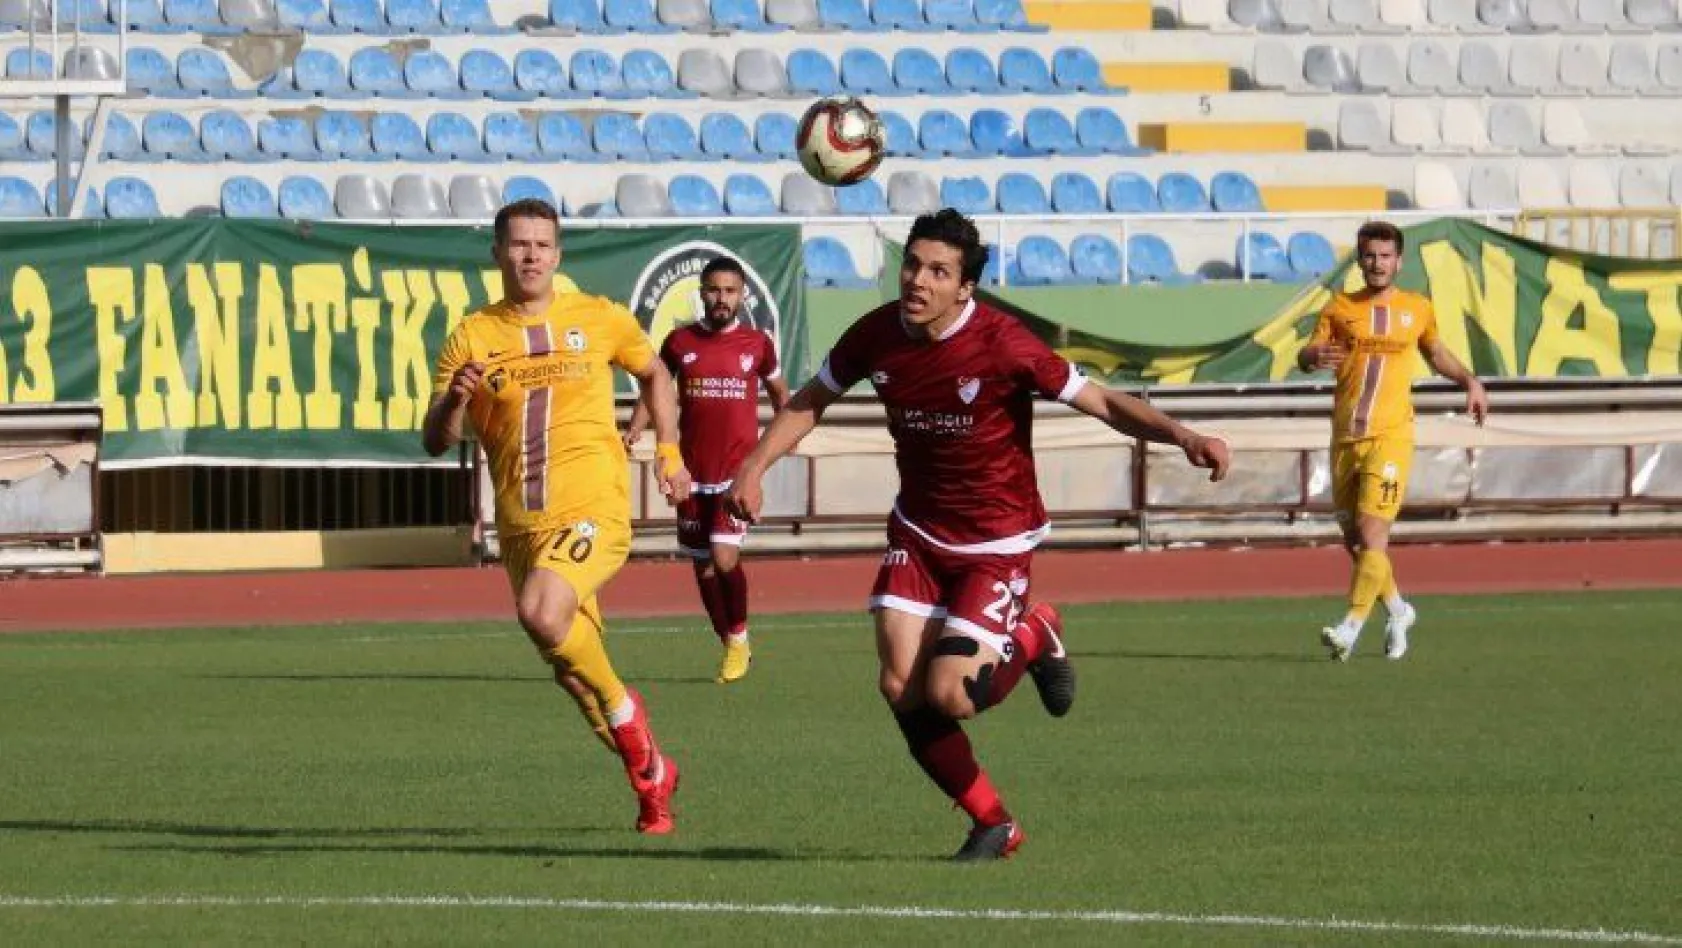 Elazığspor 0 - 1 Afjet Afyonspor